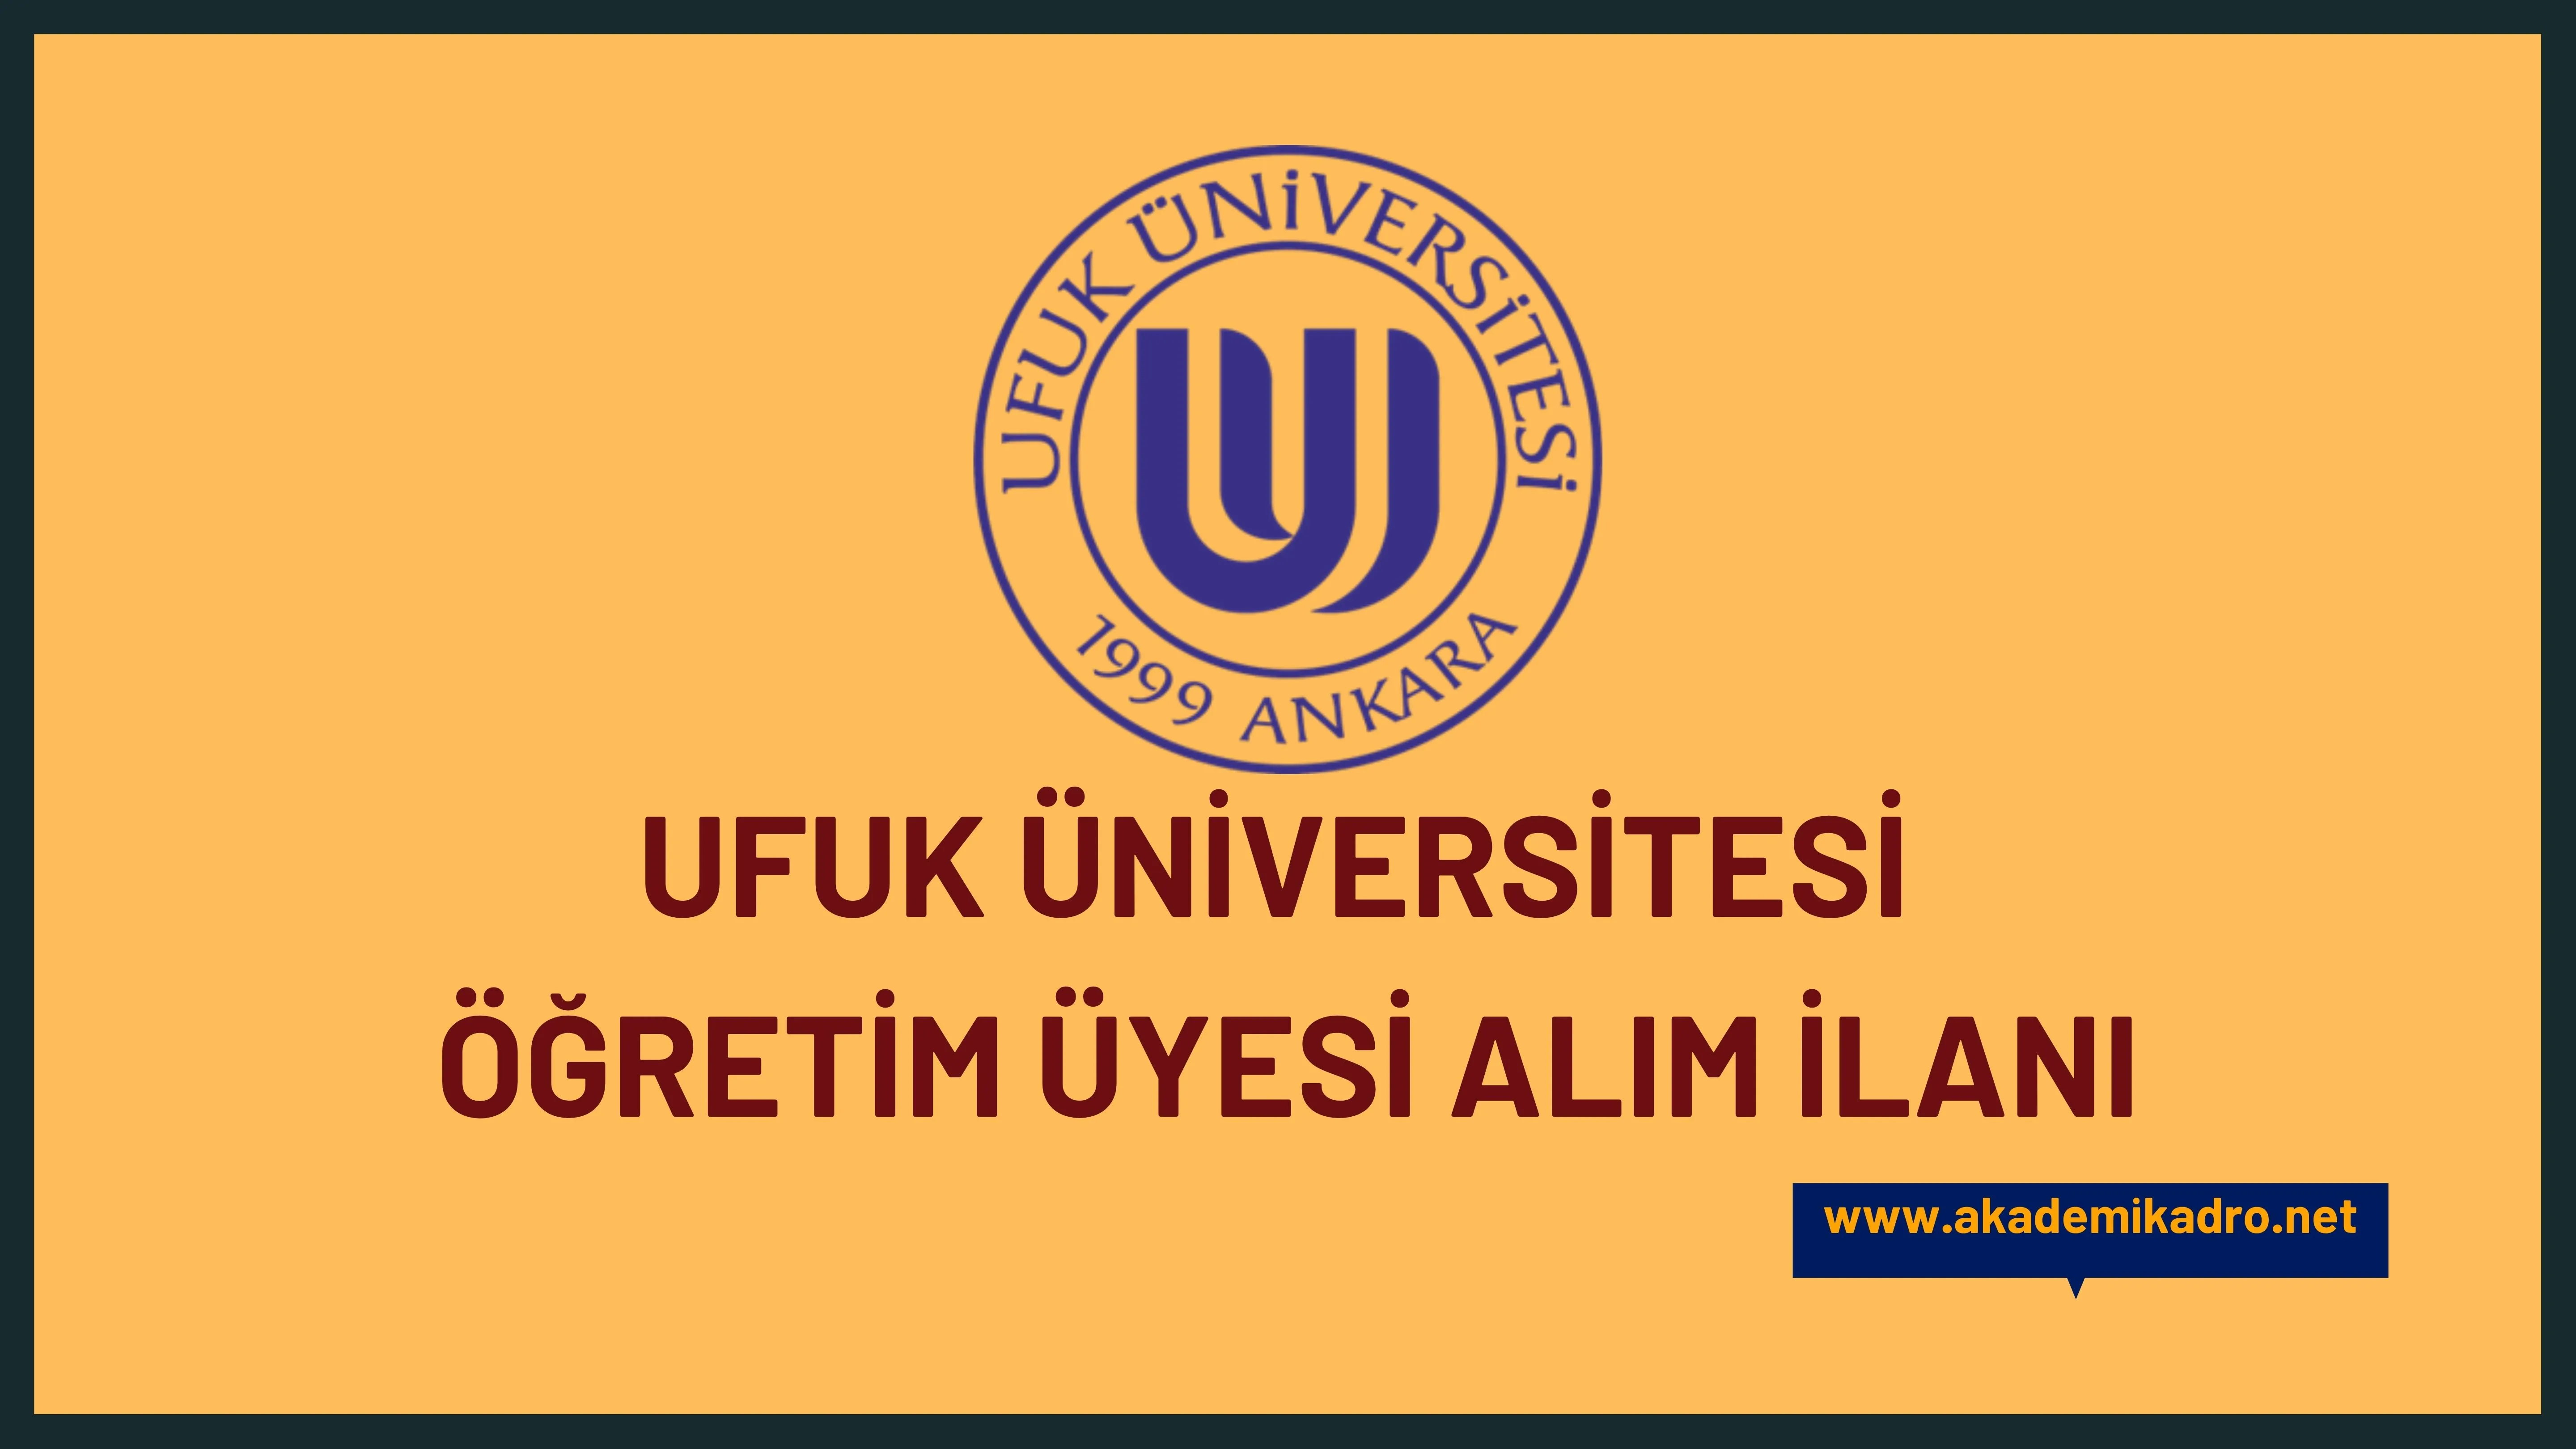 Ufuk Üniversitesi çeşitli branşlarda 14 akademik personel alacak.